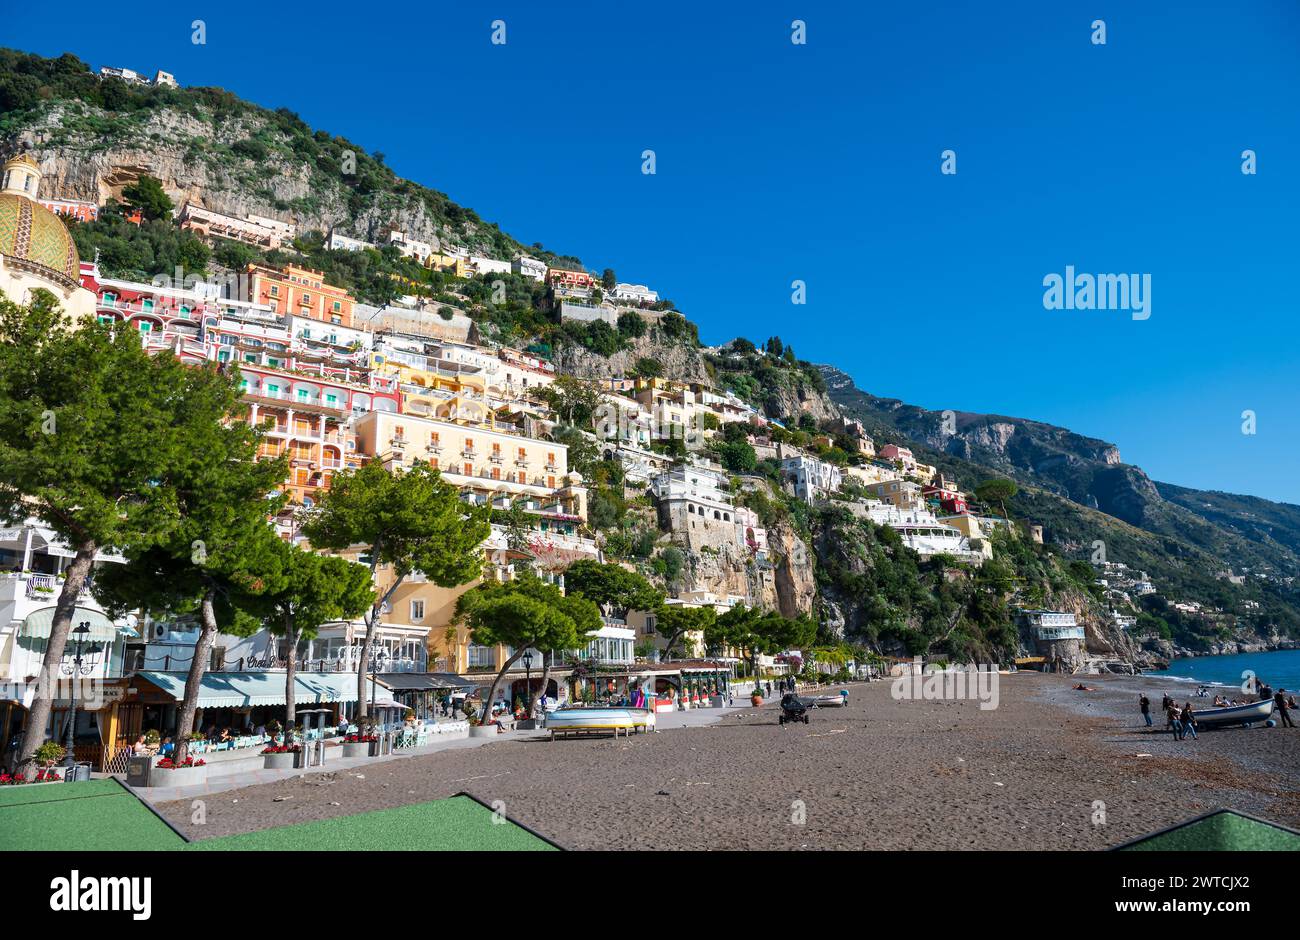 Positano, Italia - 19 dicembre 2022: Immagine vibrante della pittoresca cittadina costiera di Positano con edifici colorati che salgono sulla collina sotto un blu chiaro Foto Stock